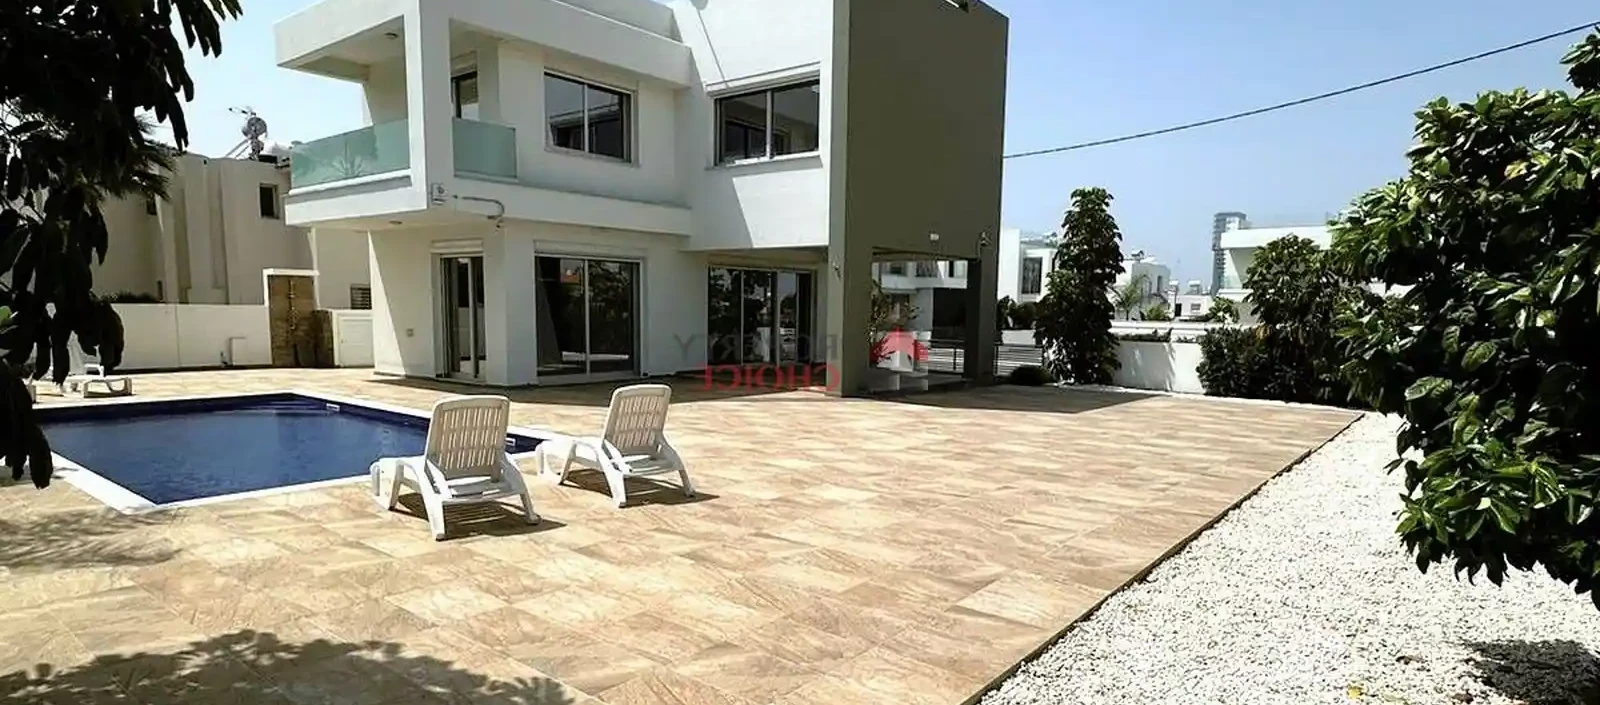 3-bedroom villa to rent €2.400, image 1